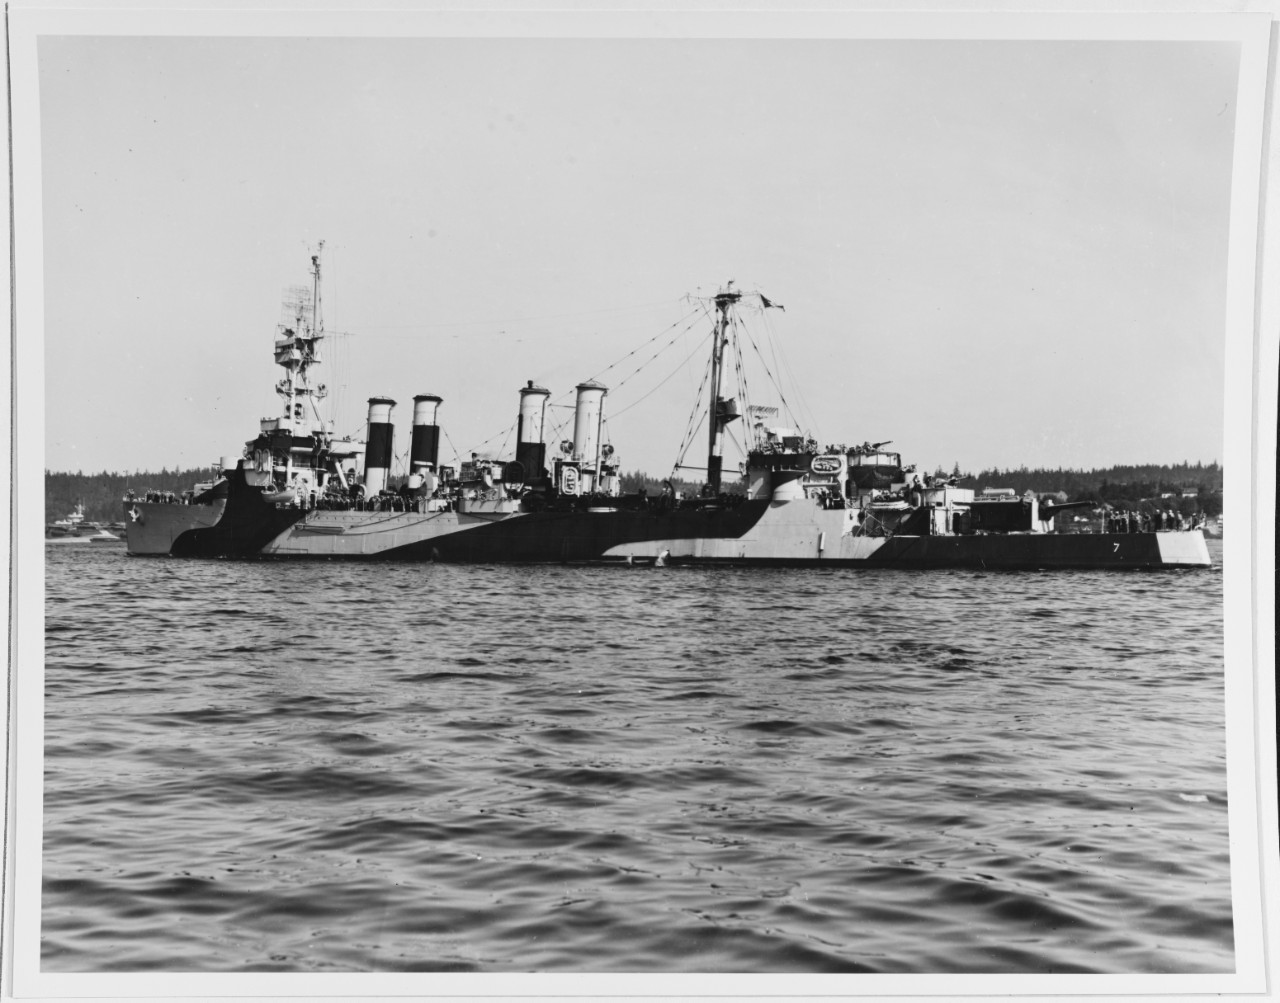 USS RALEIGH (CL-7)